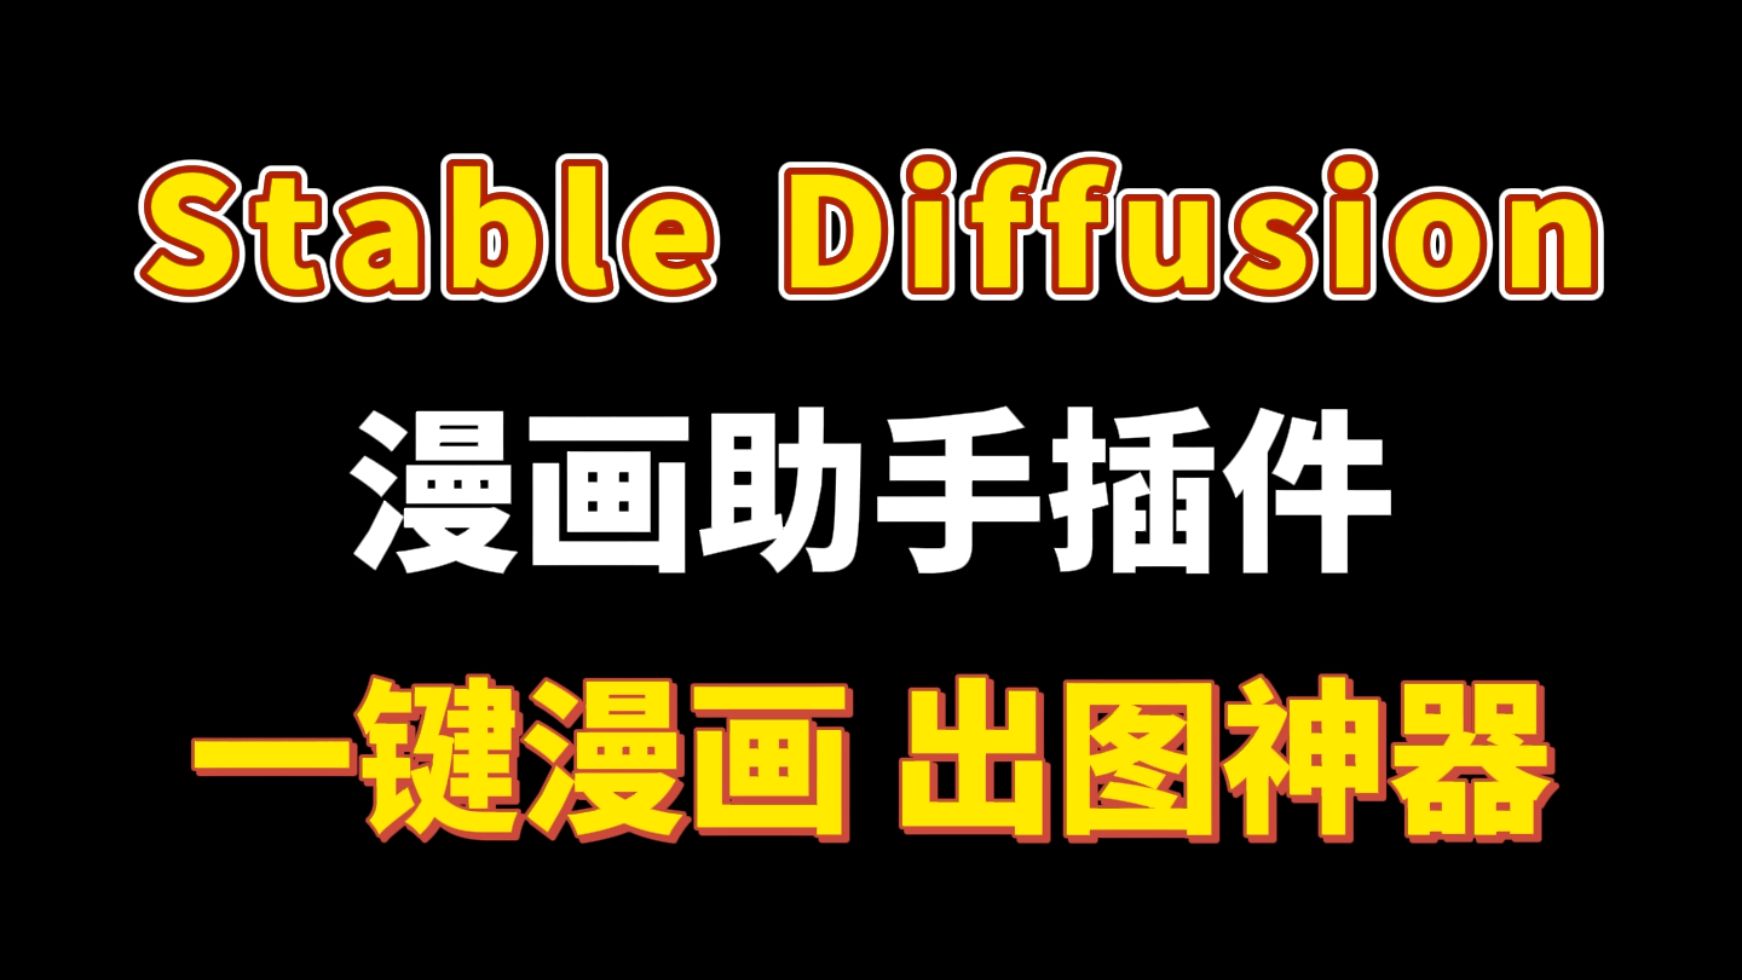 【Stable Diffusion】AI漫画助手5.5版本来了！支持中文输入！最强脚本，人物，剧本，风格最全画风！批量快速生成动漫风格图片！免费使用！